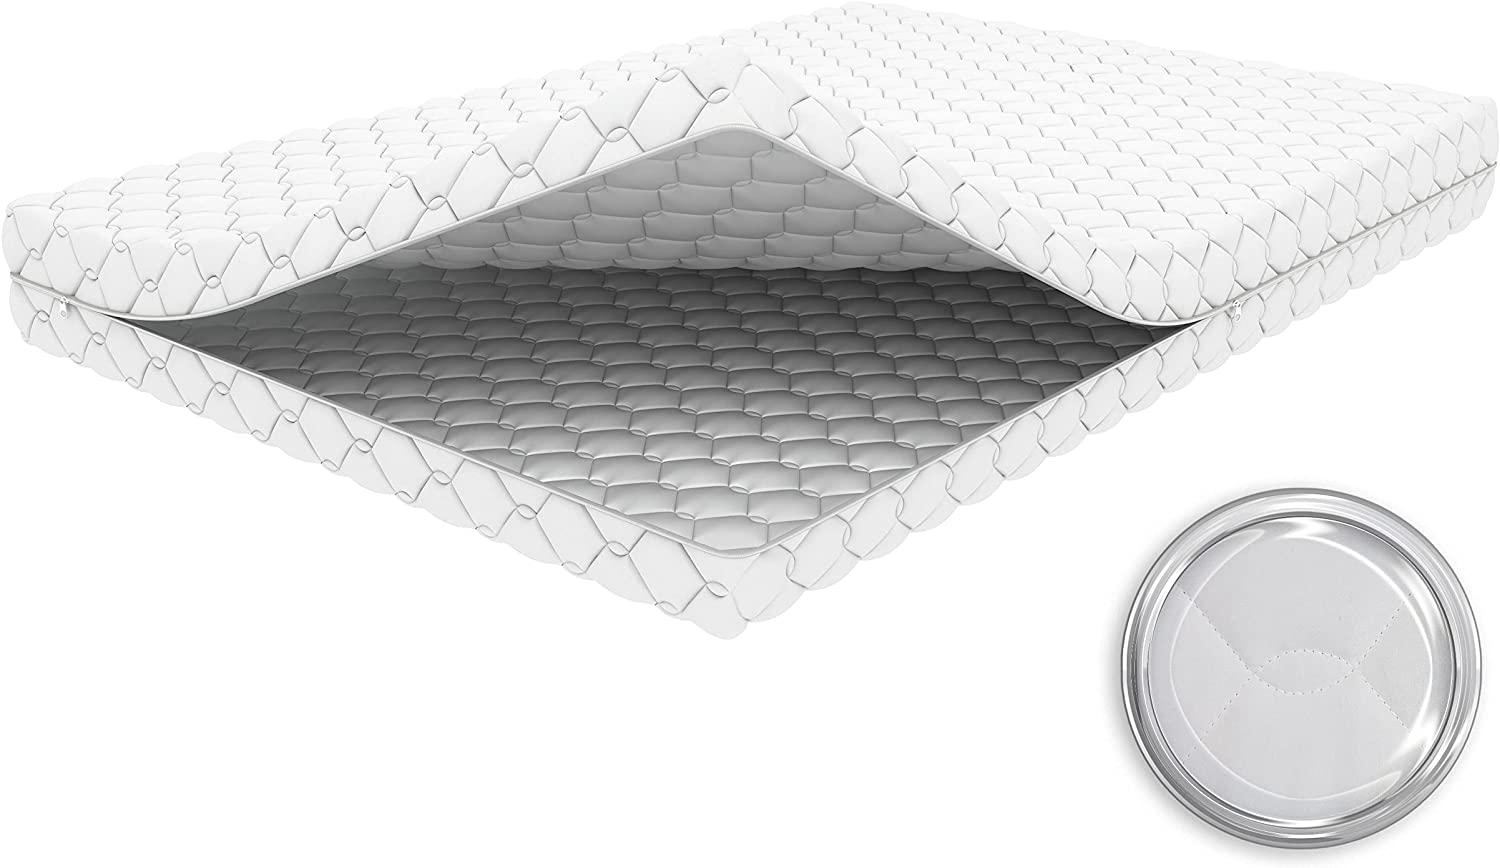 Crownmiller Microfaser Ersatz Matratzenbezug, 60°C waschbar, 4-seitiger Reißverschluss 10 cm (Matratzen von 8-12cm), 70x160 cm Bild 1